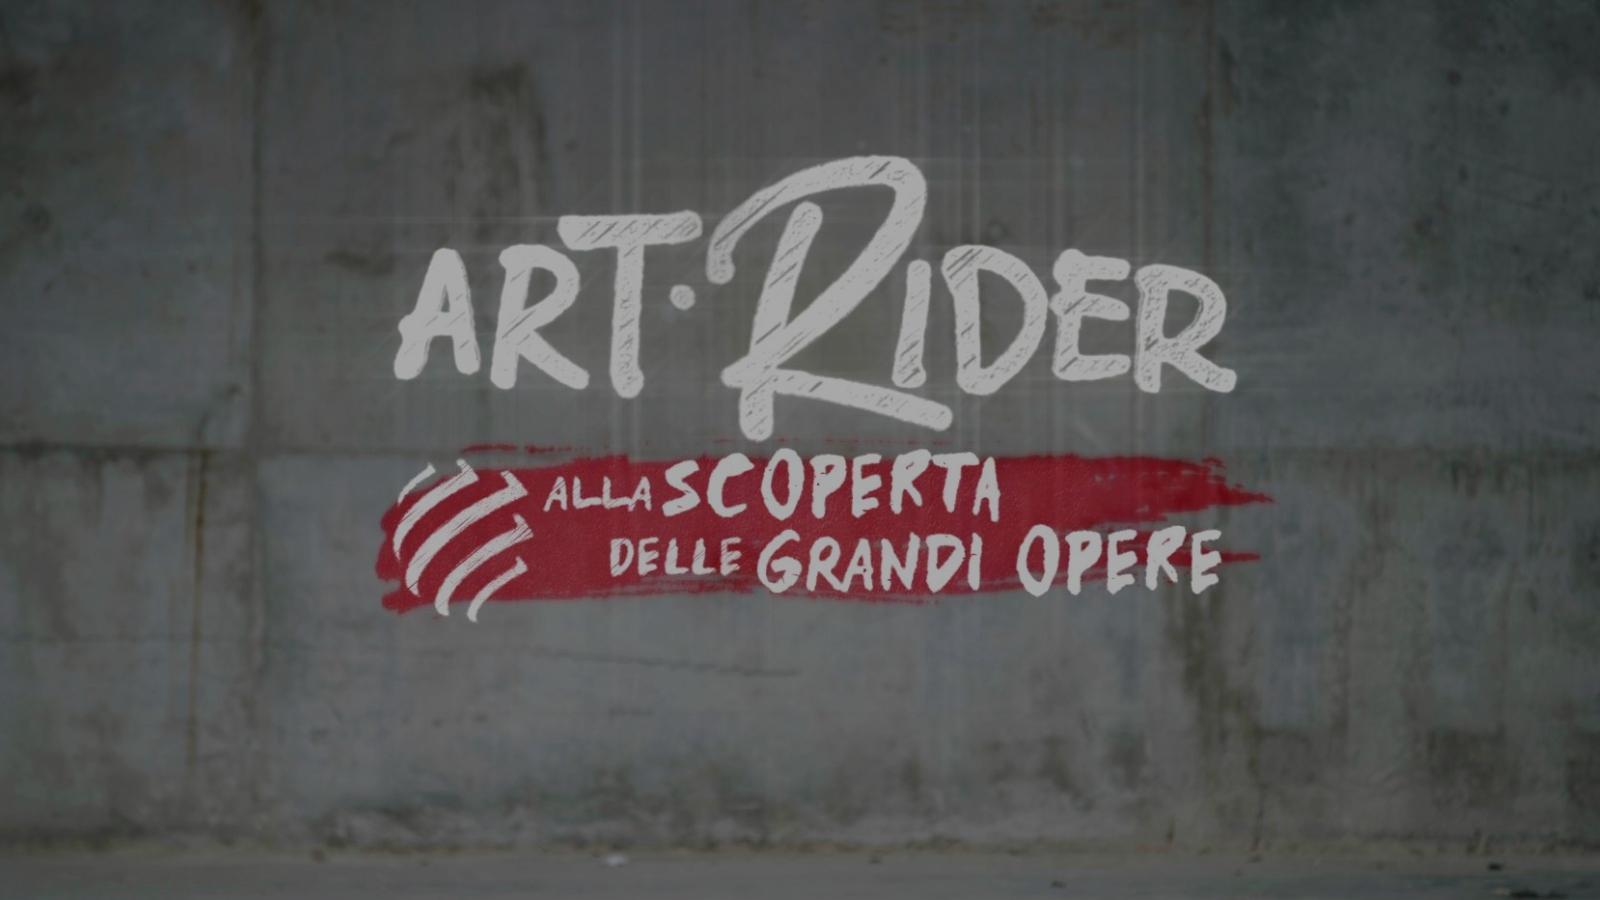 Art Rider alla scoperta delle grandi opere